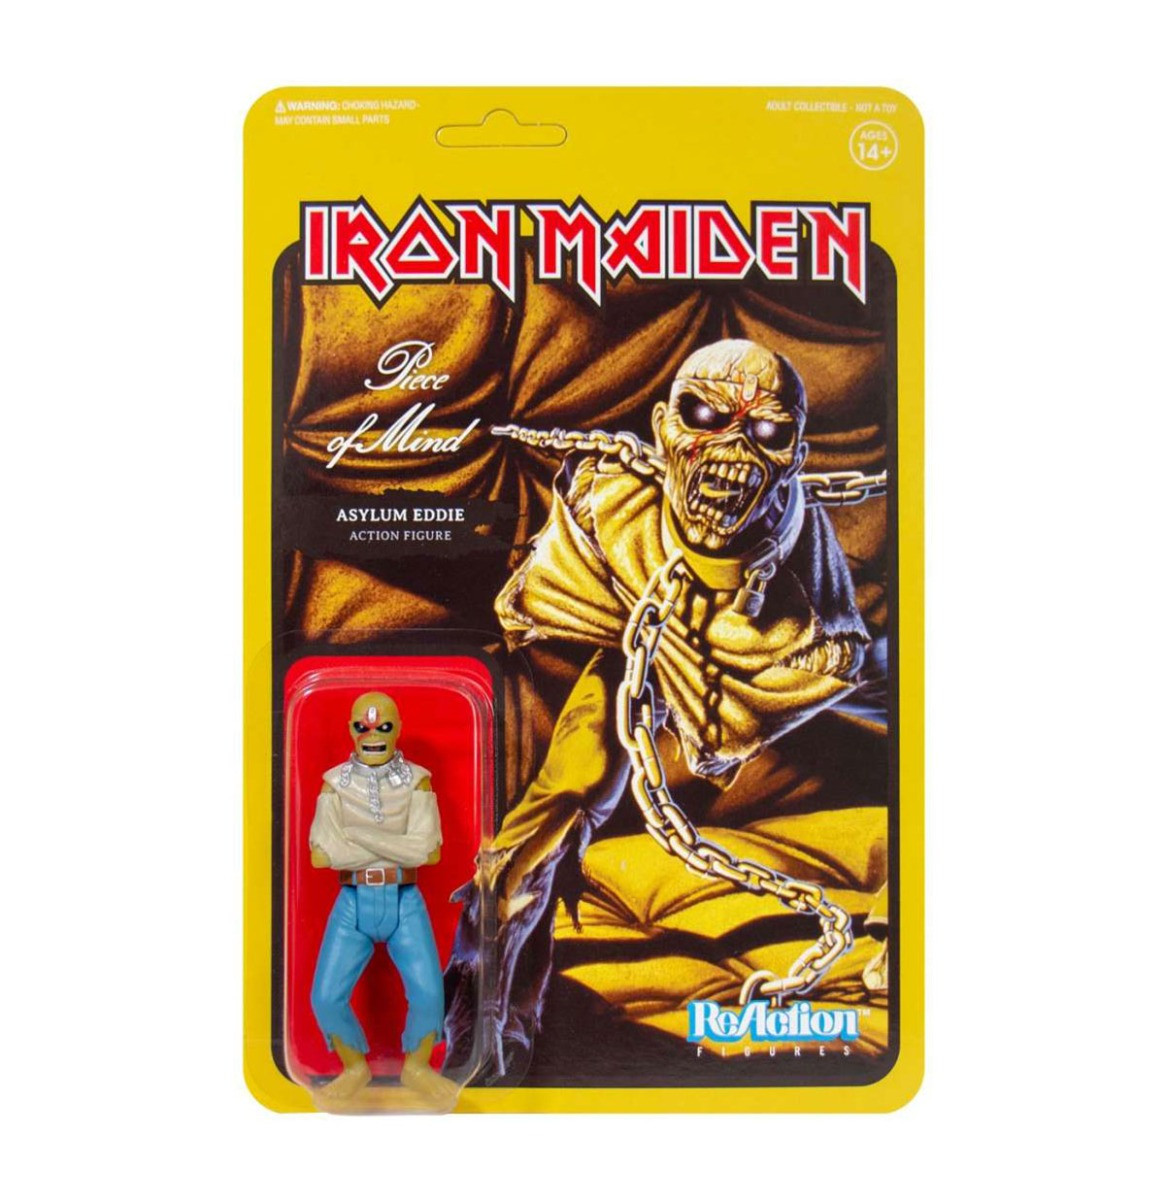 Iron Maiden: Piece of Mind - Asylum Eddie 3.75 inch ReAction Figuur